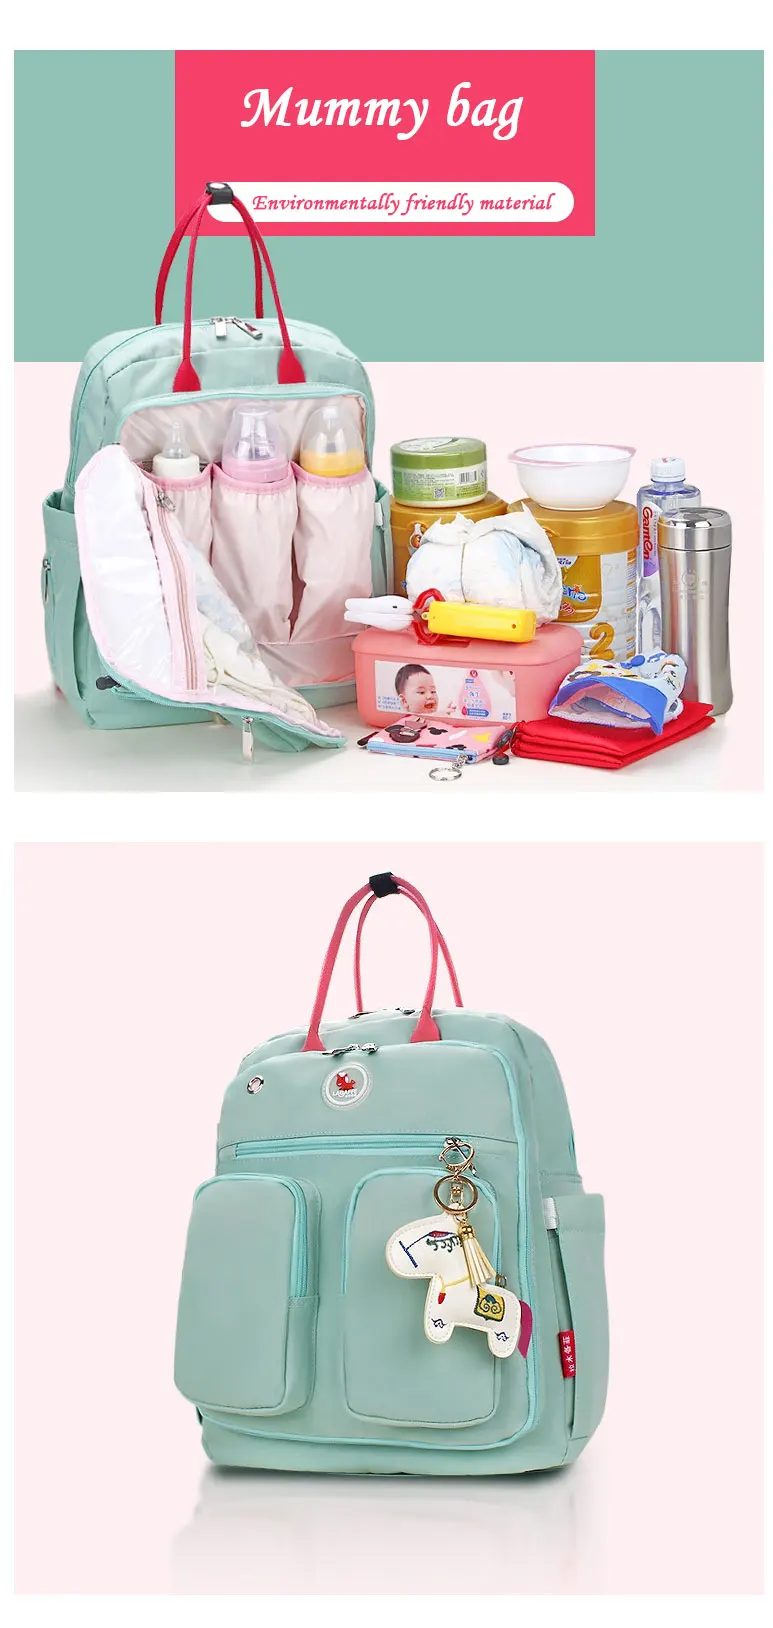 OLN Новый Ёмкость мумия мешок материнства Детская сумка для пеленки многофункциональный уход сумка рюкзак Baby Care мама удобная сумка сумки